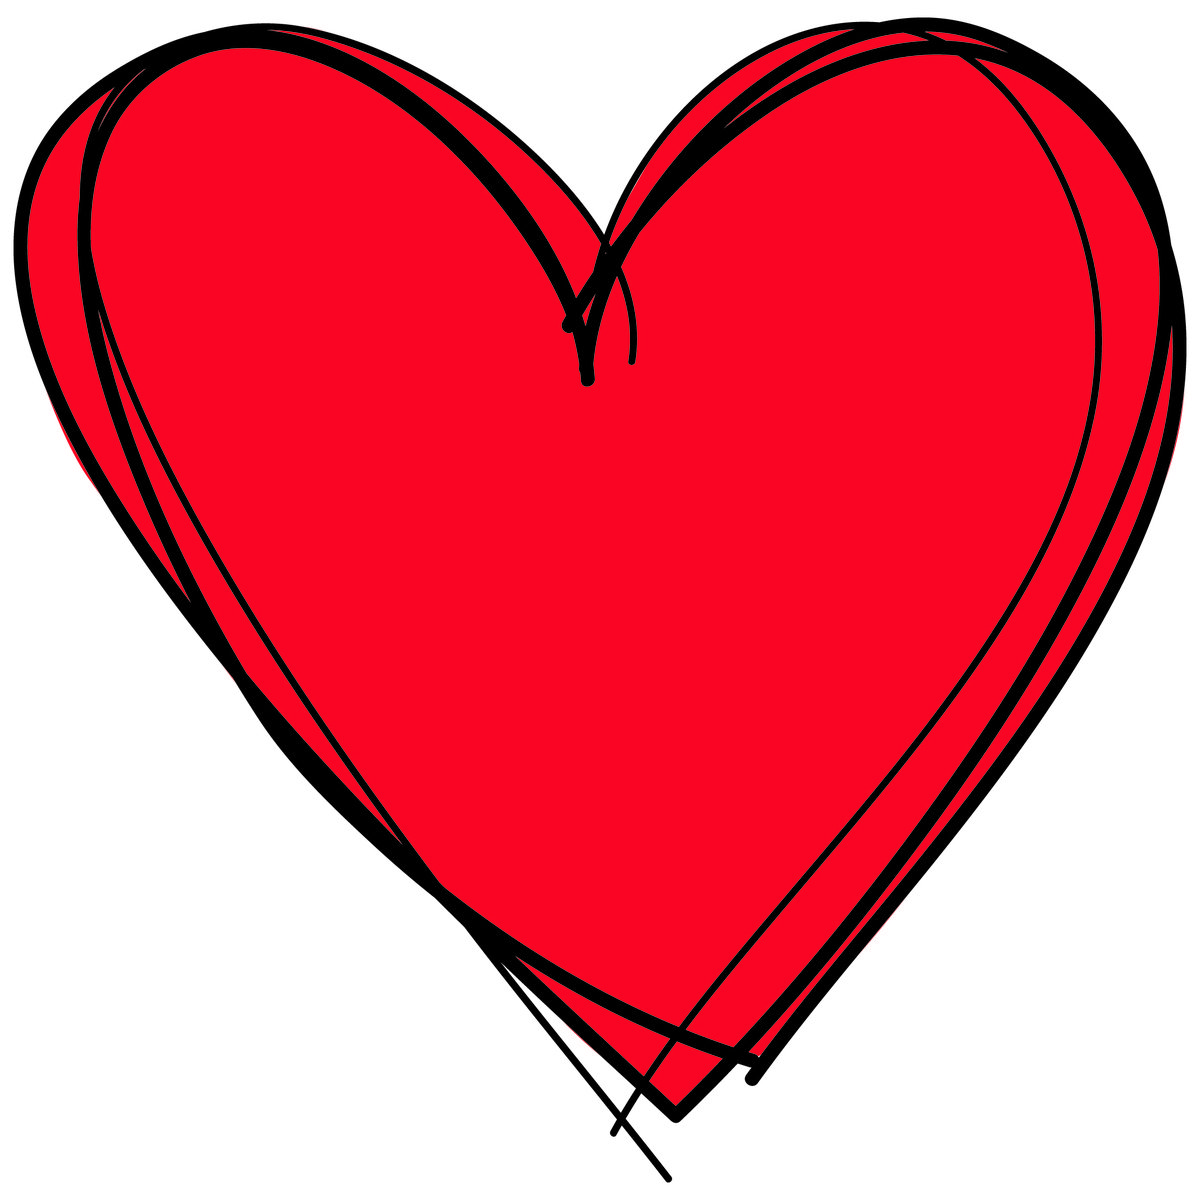 a heart shape clip art with an arrow in the center